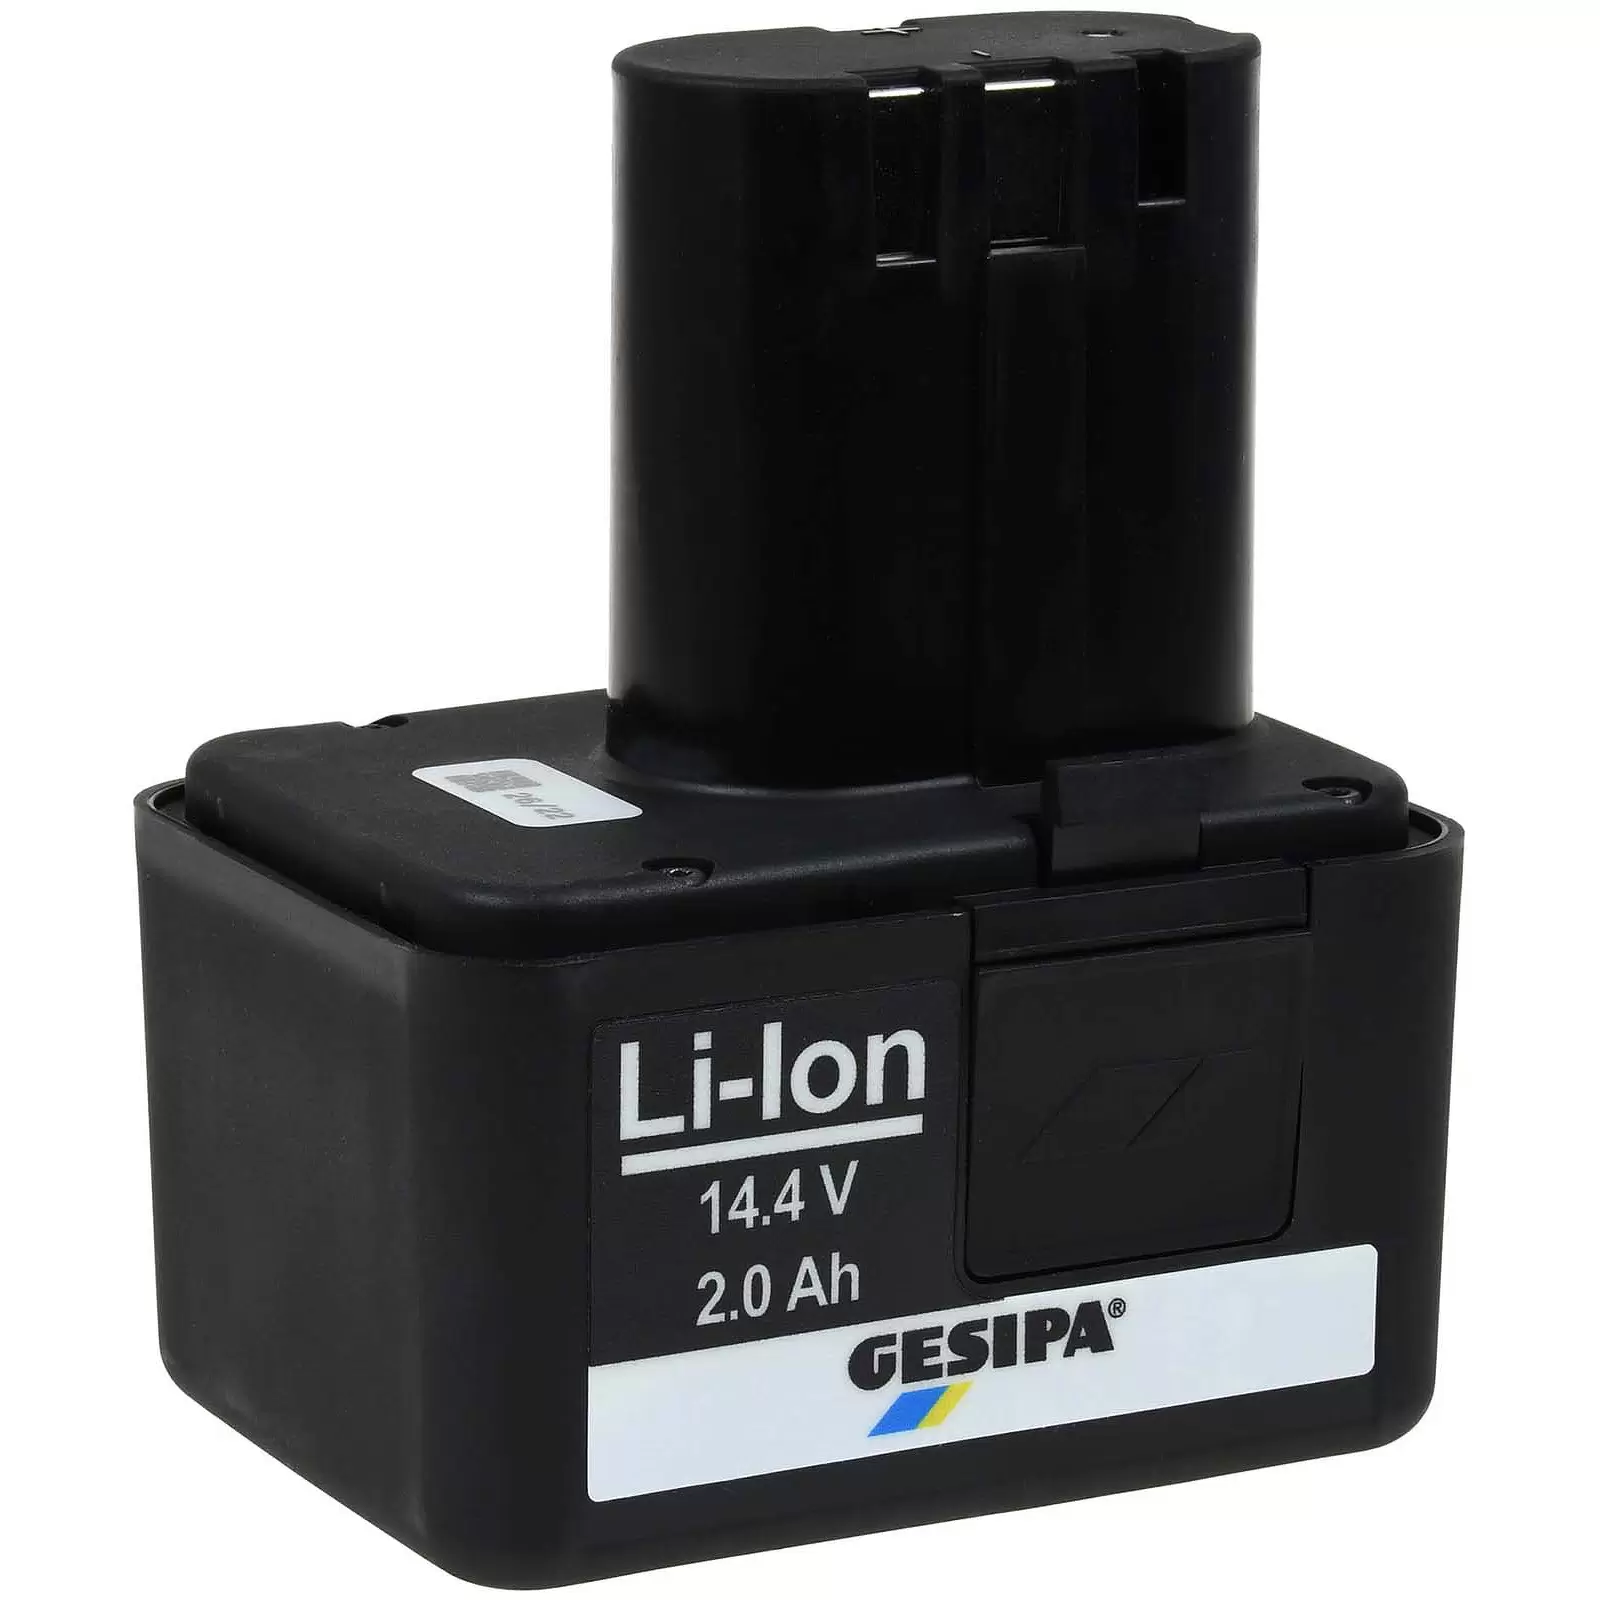 Gesipa Li-Ion Schnell-Wechselakku für Nietgeräte AccuBird, PowerBird, Firebird 14,4V 2,0Ah